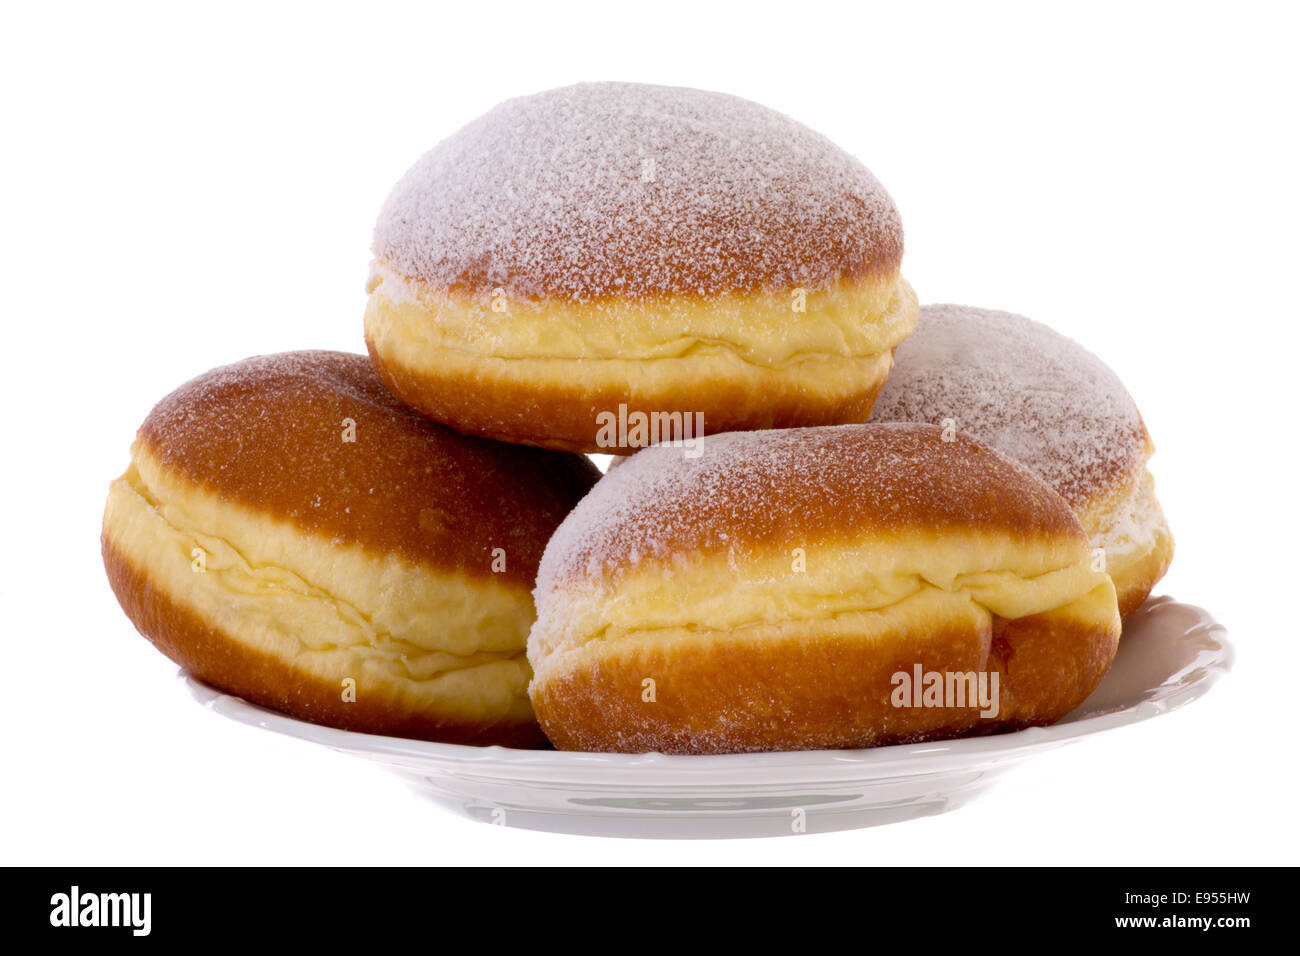 Krapfen Berliner Pfannkuchen Bismarck Donuts Stock Photo - Alamy